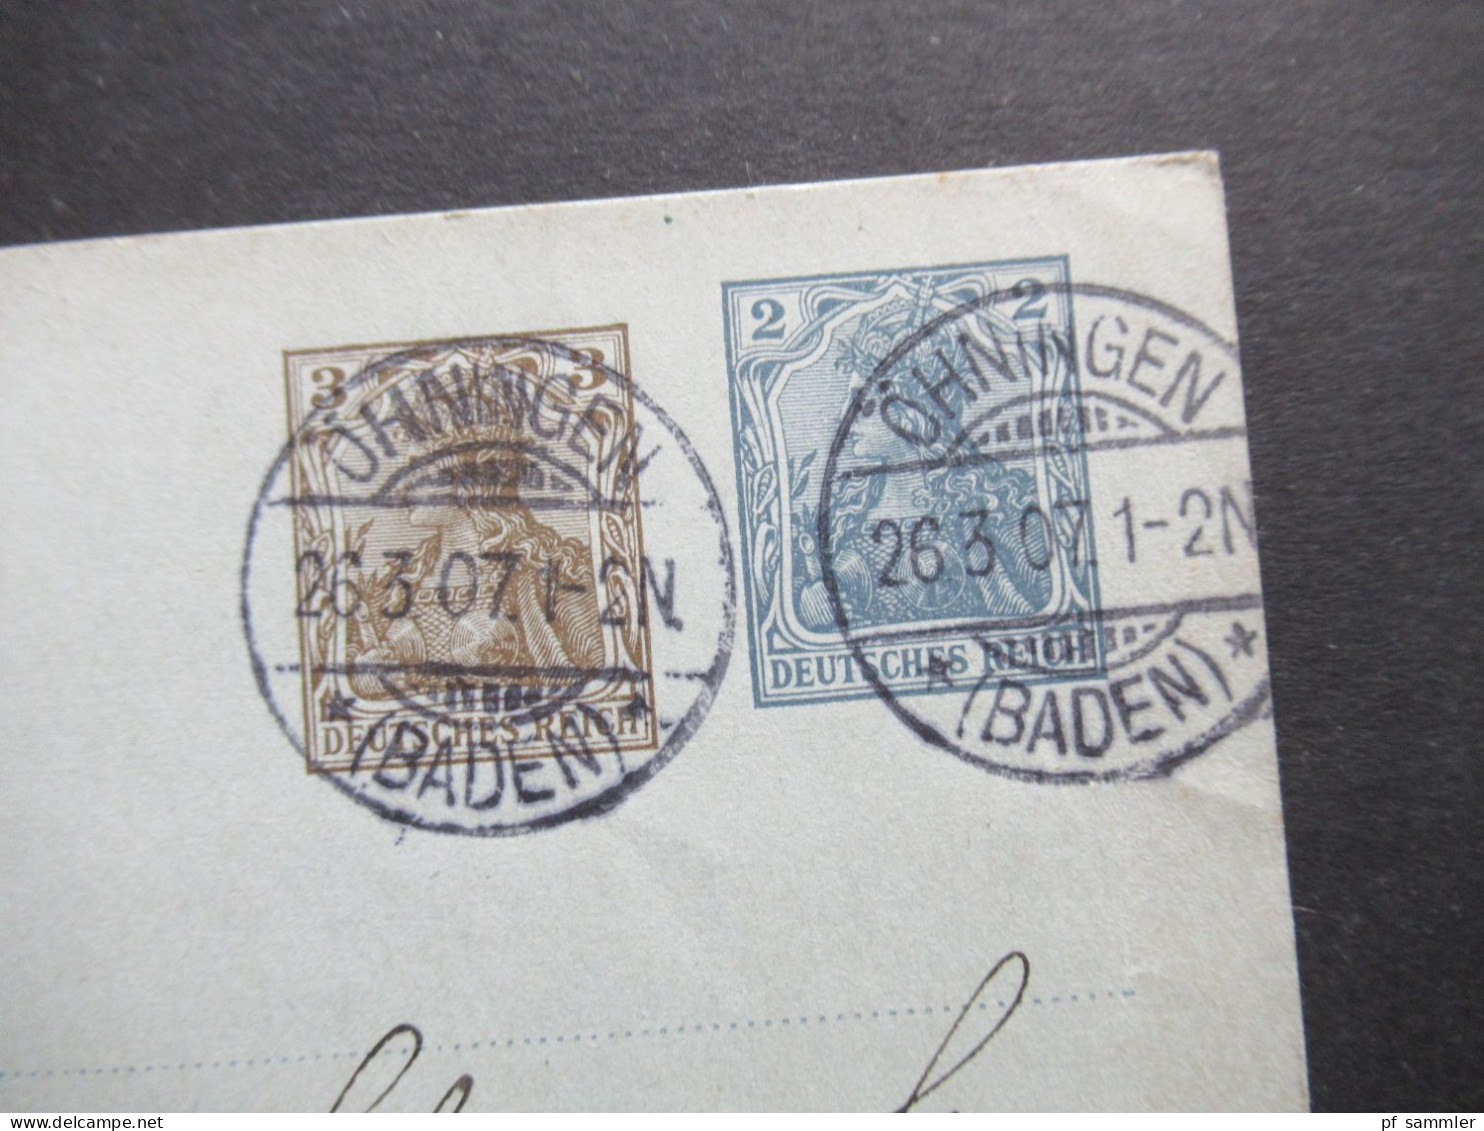 DR 1907 Germania GA Sauberer Stempel Öhningen (Baden) Nach Baden-Baden Mit Ank. Stempel - Postkarten